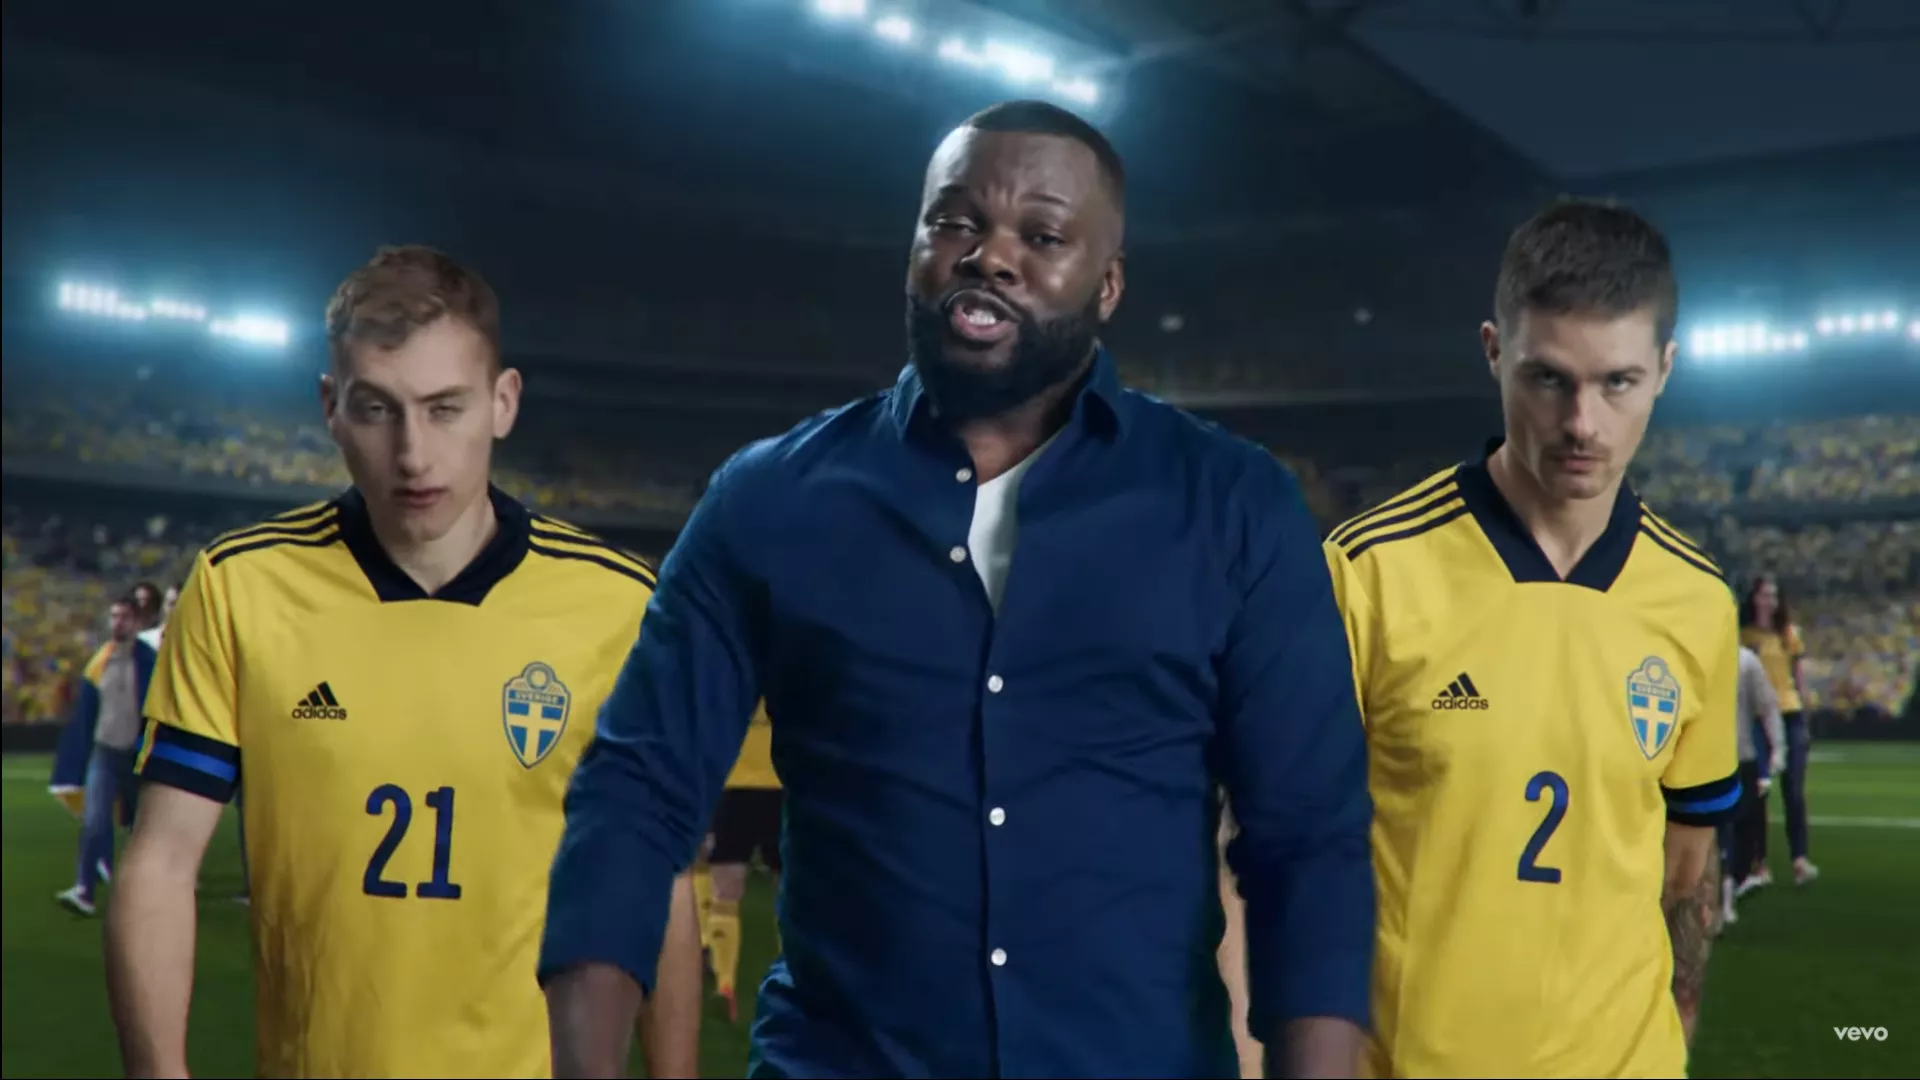 Är hoppet borta i svenska fotbollslåtar?